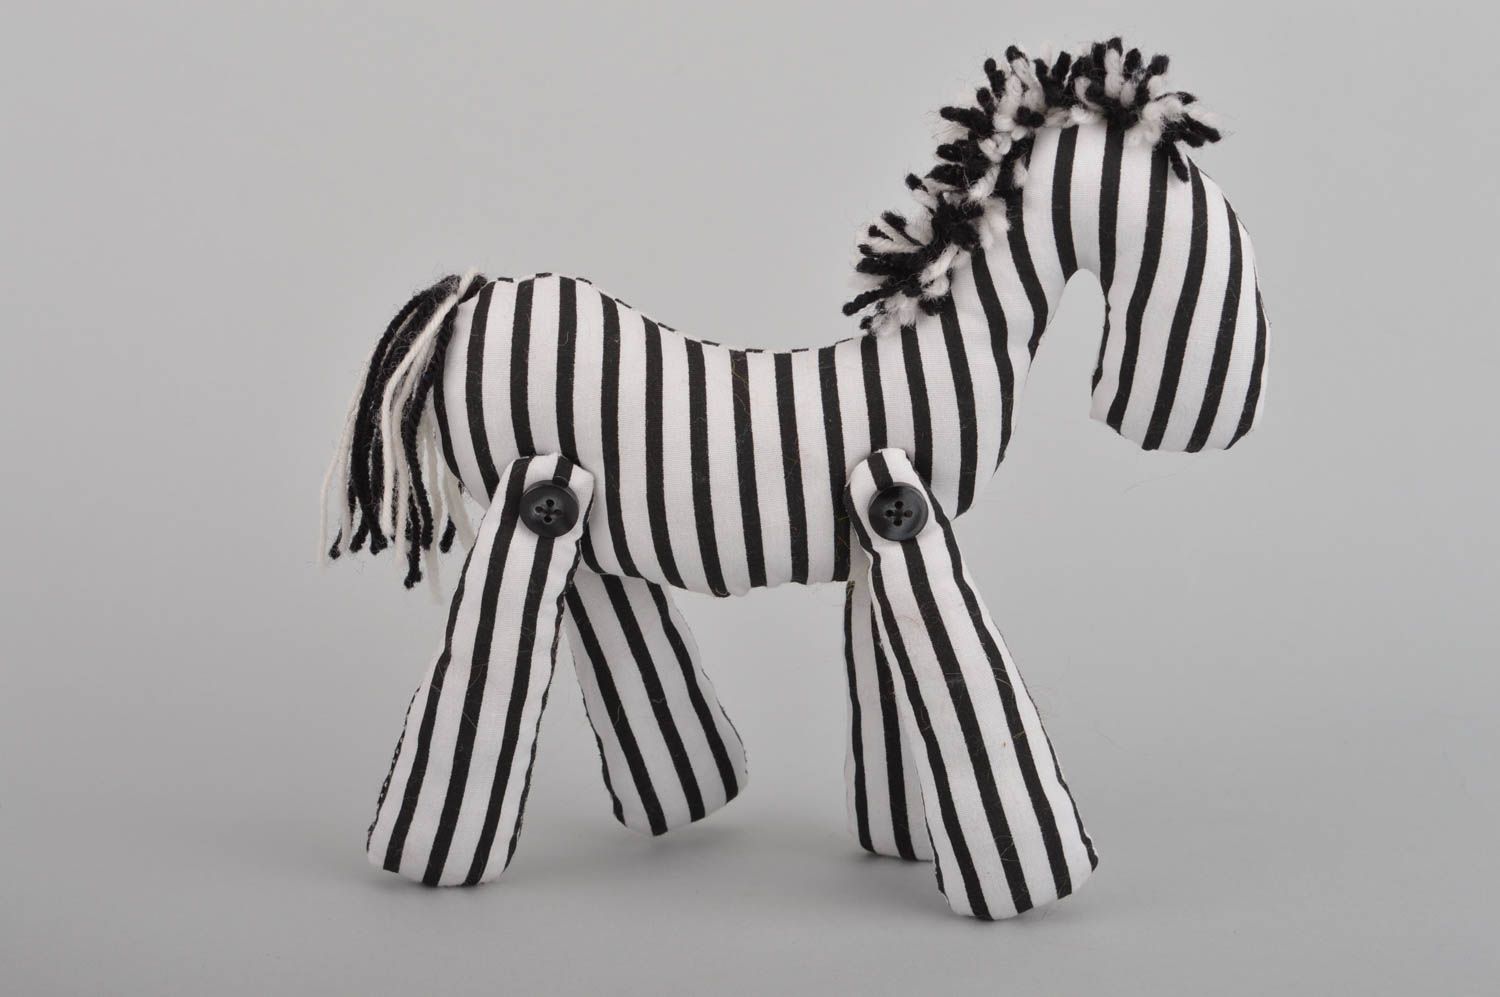 Игрушка зебра полосатая черная с белым красивая оригинальная небольшая хэнд мейд фото 2